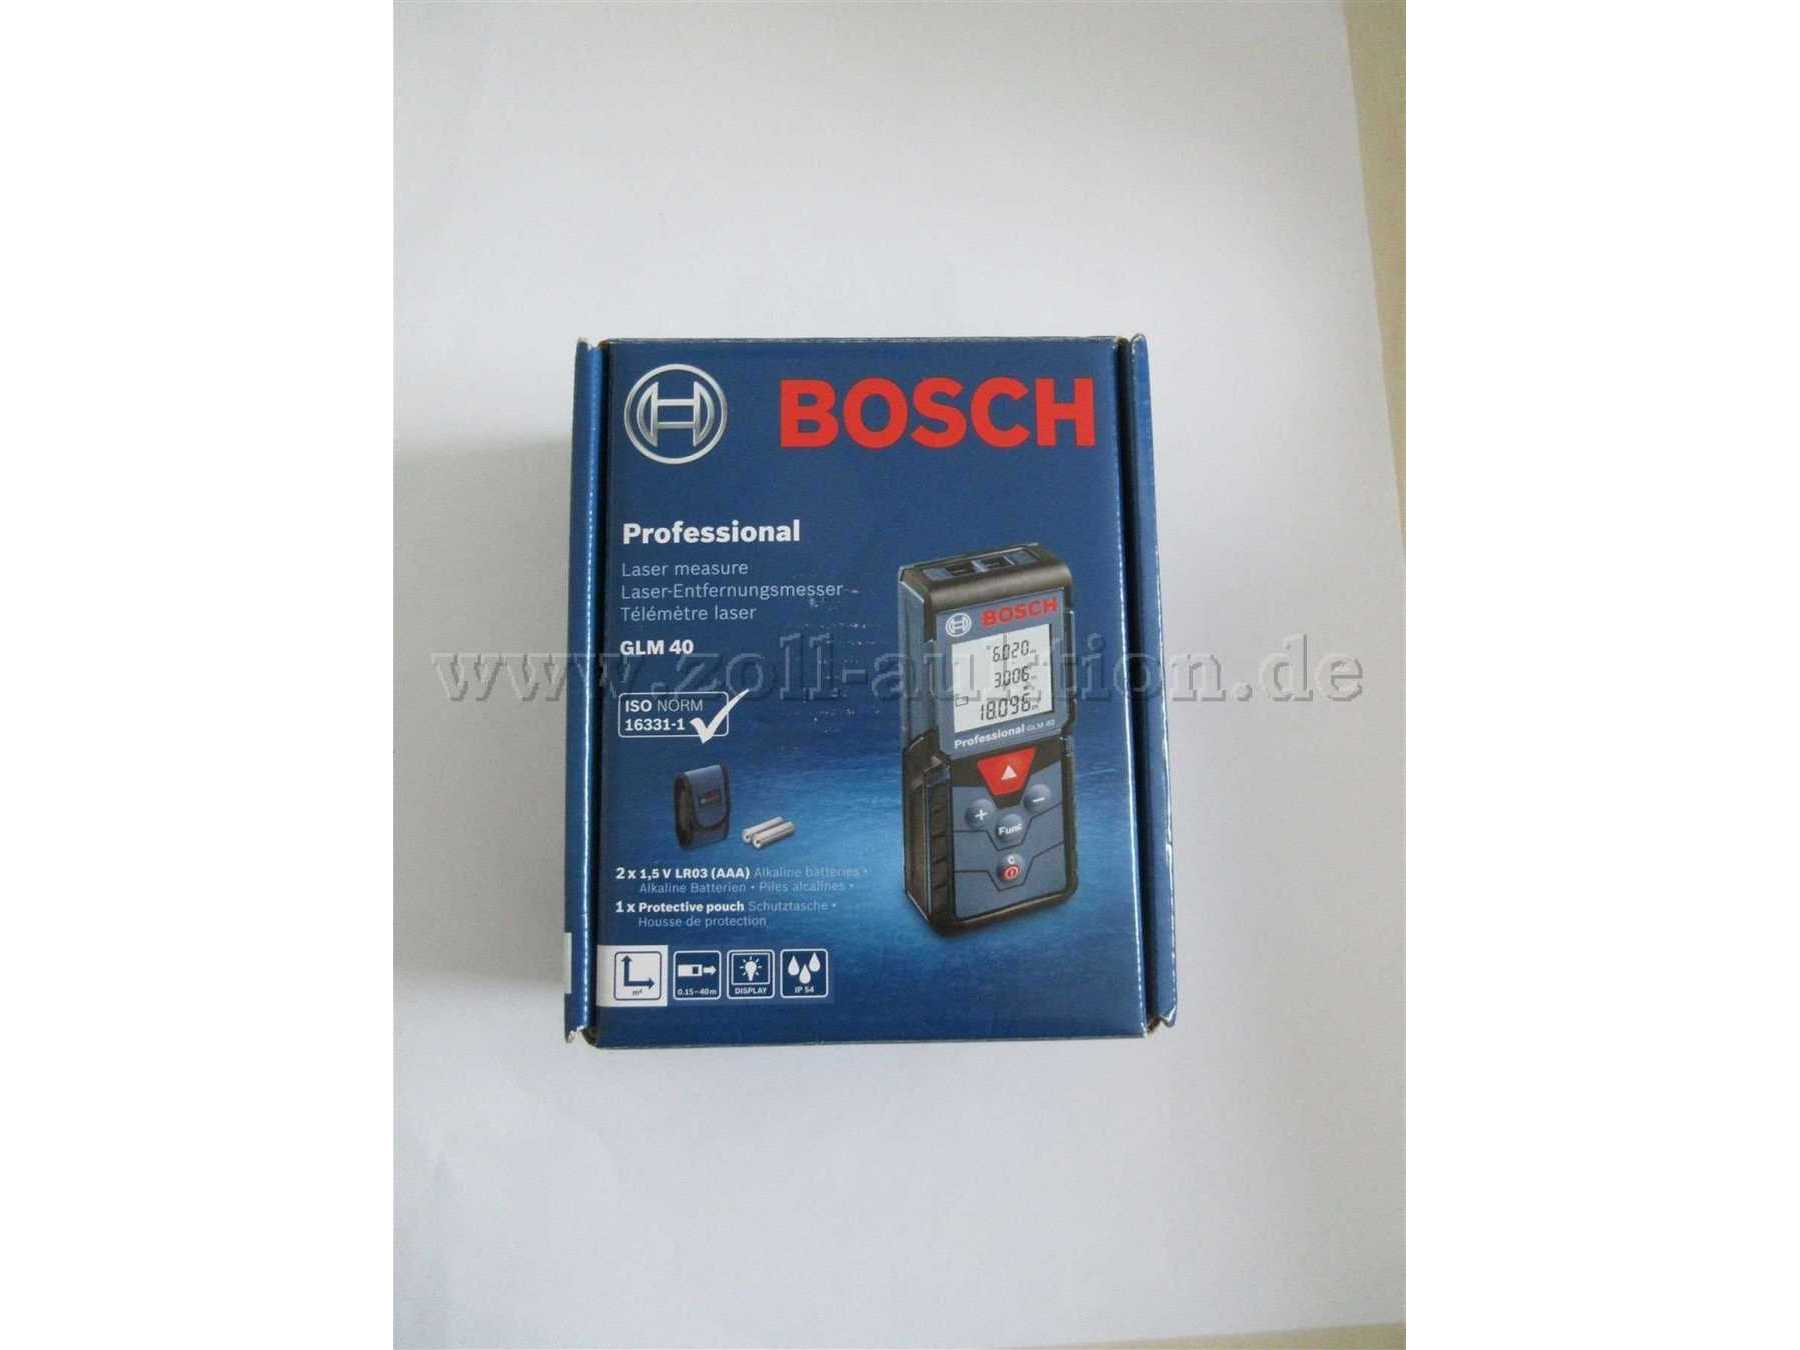 Bosch GLM40 Karton Vorderseite